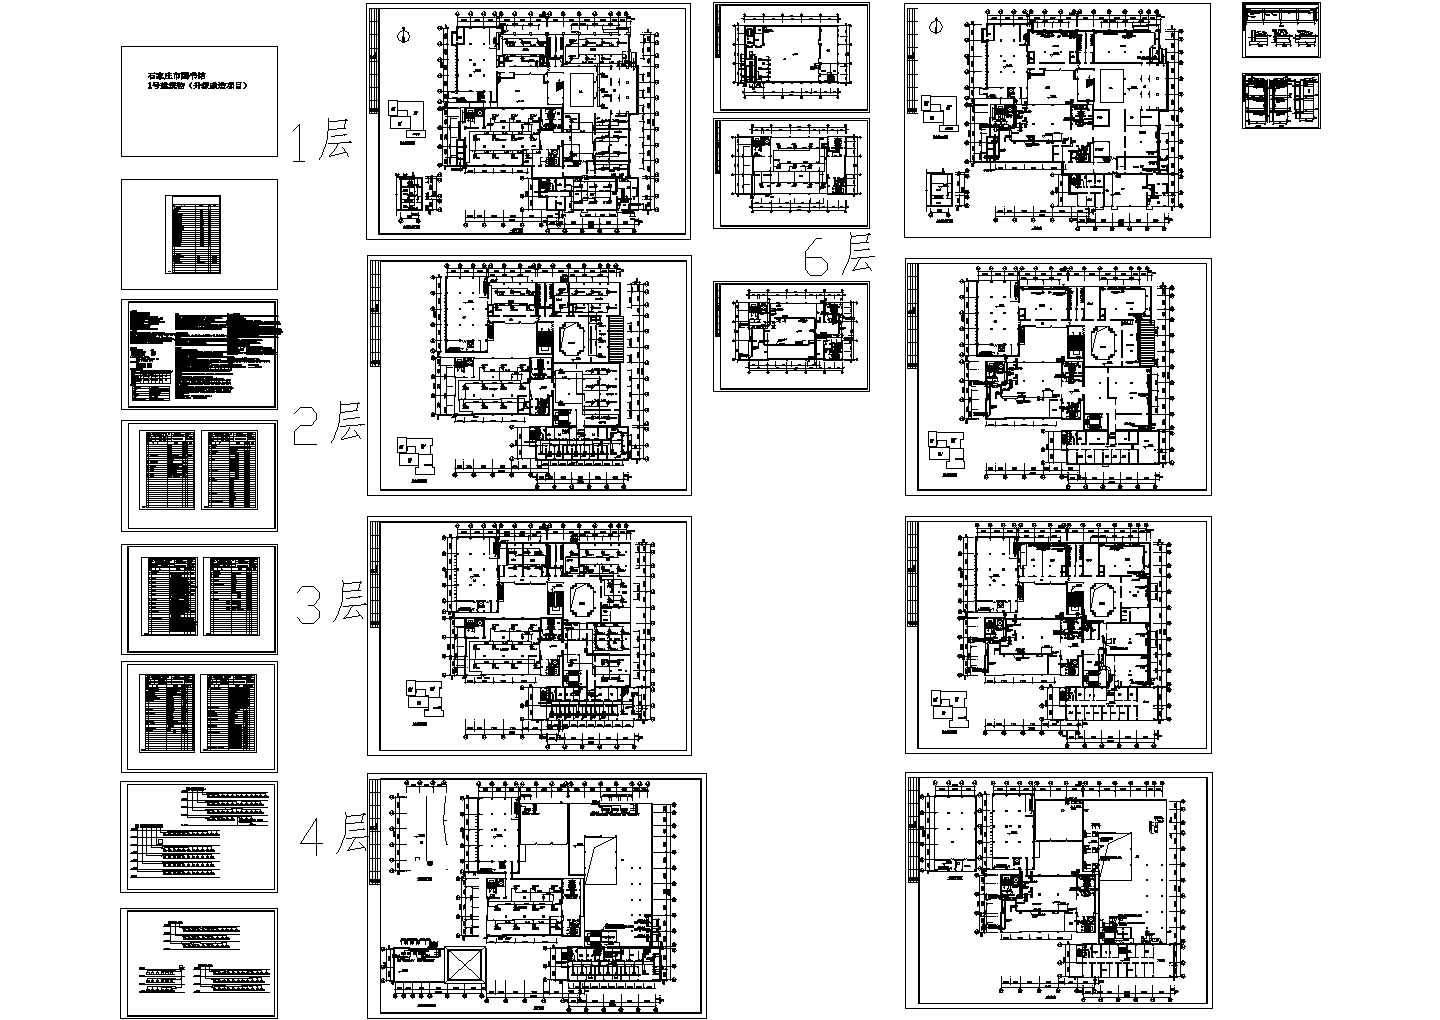 某国际庄市图书馆全套空调设计施工图